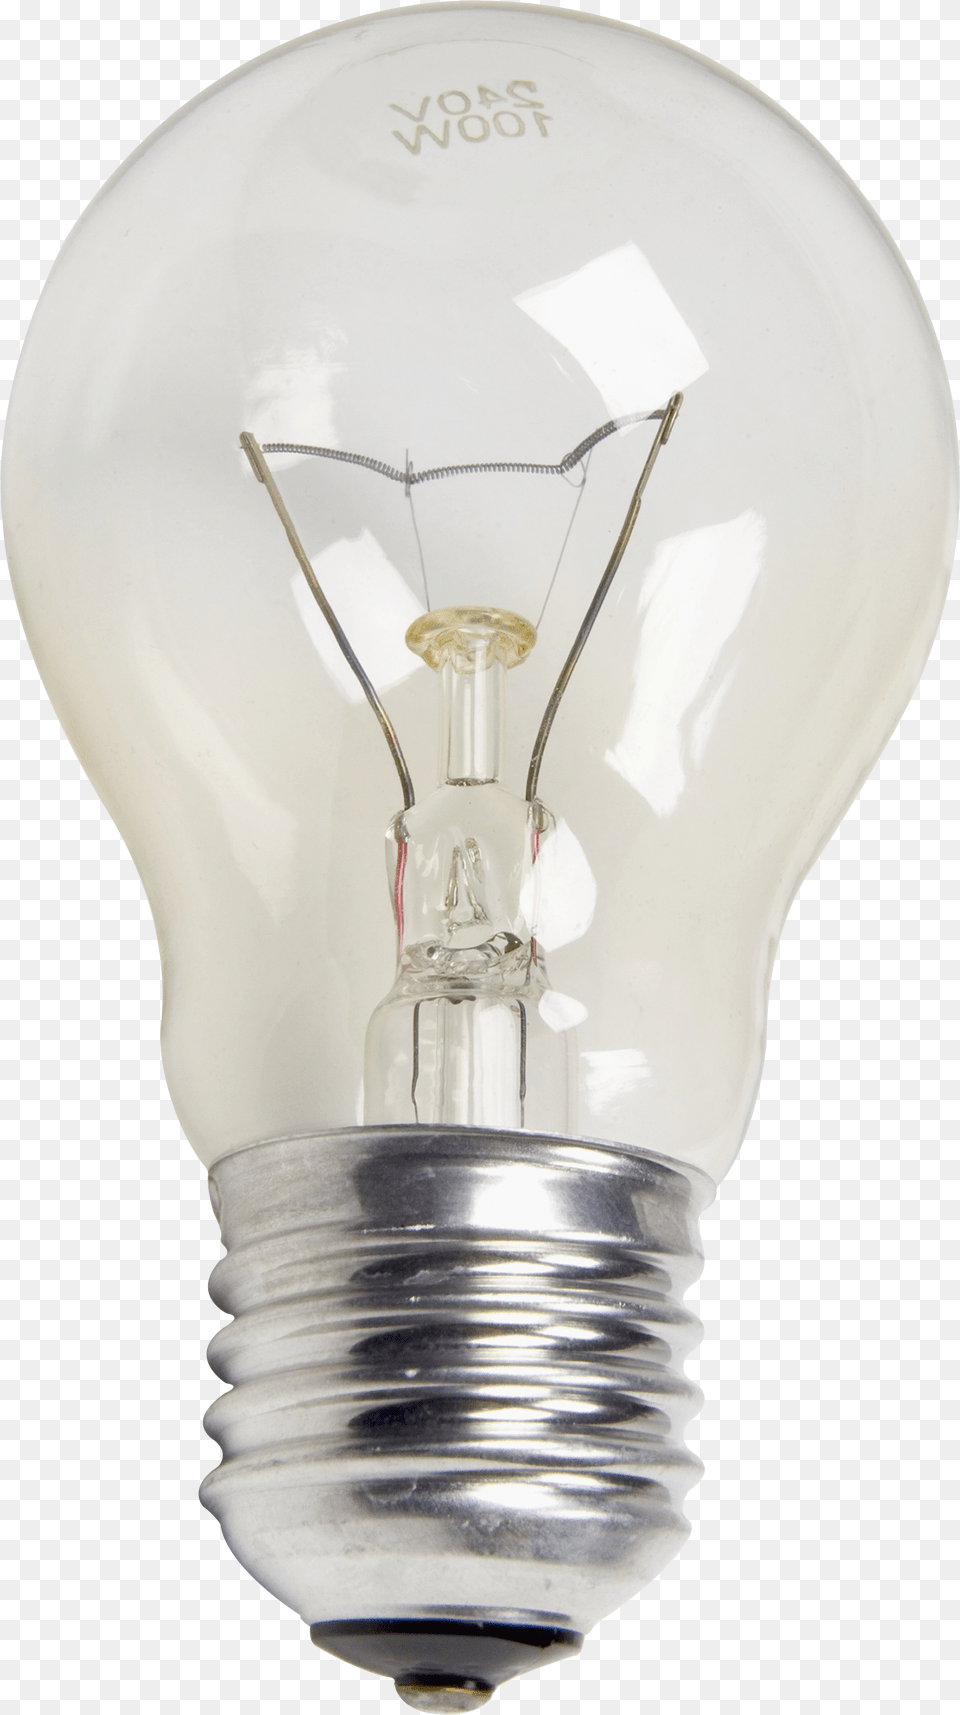 Lamp, Light, Lightbulb Png Image